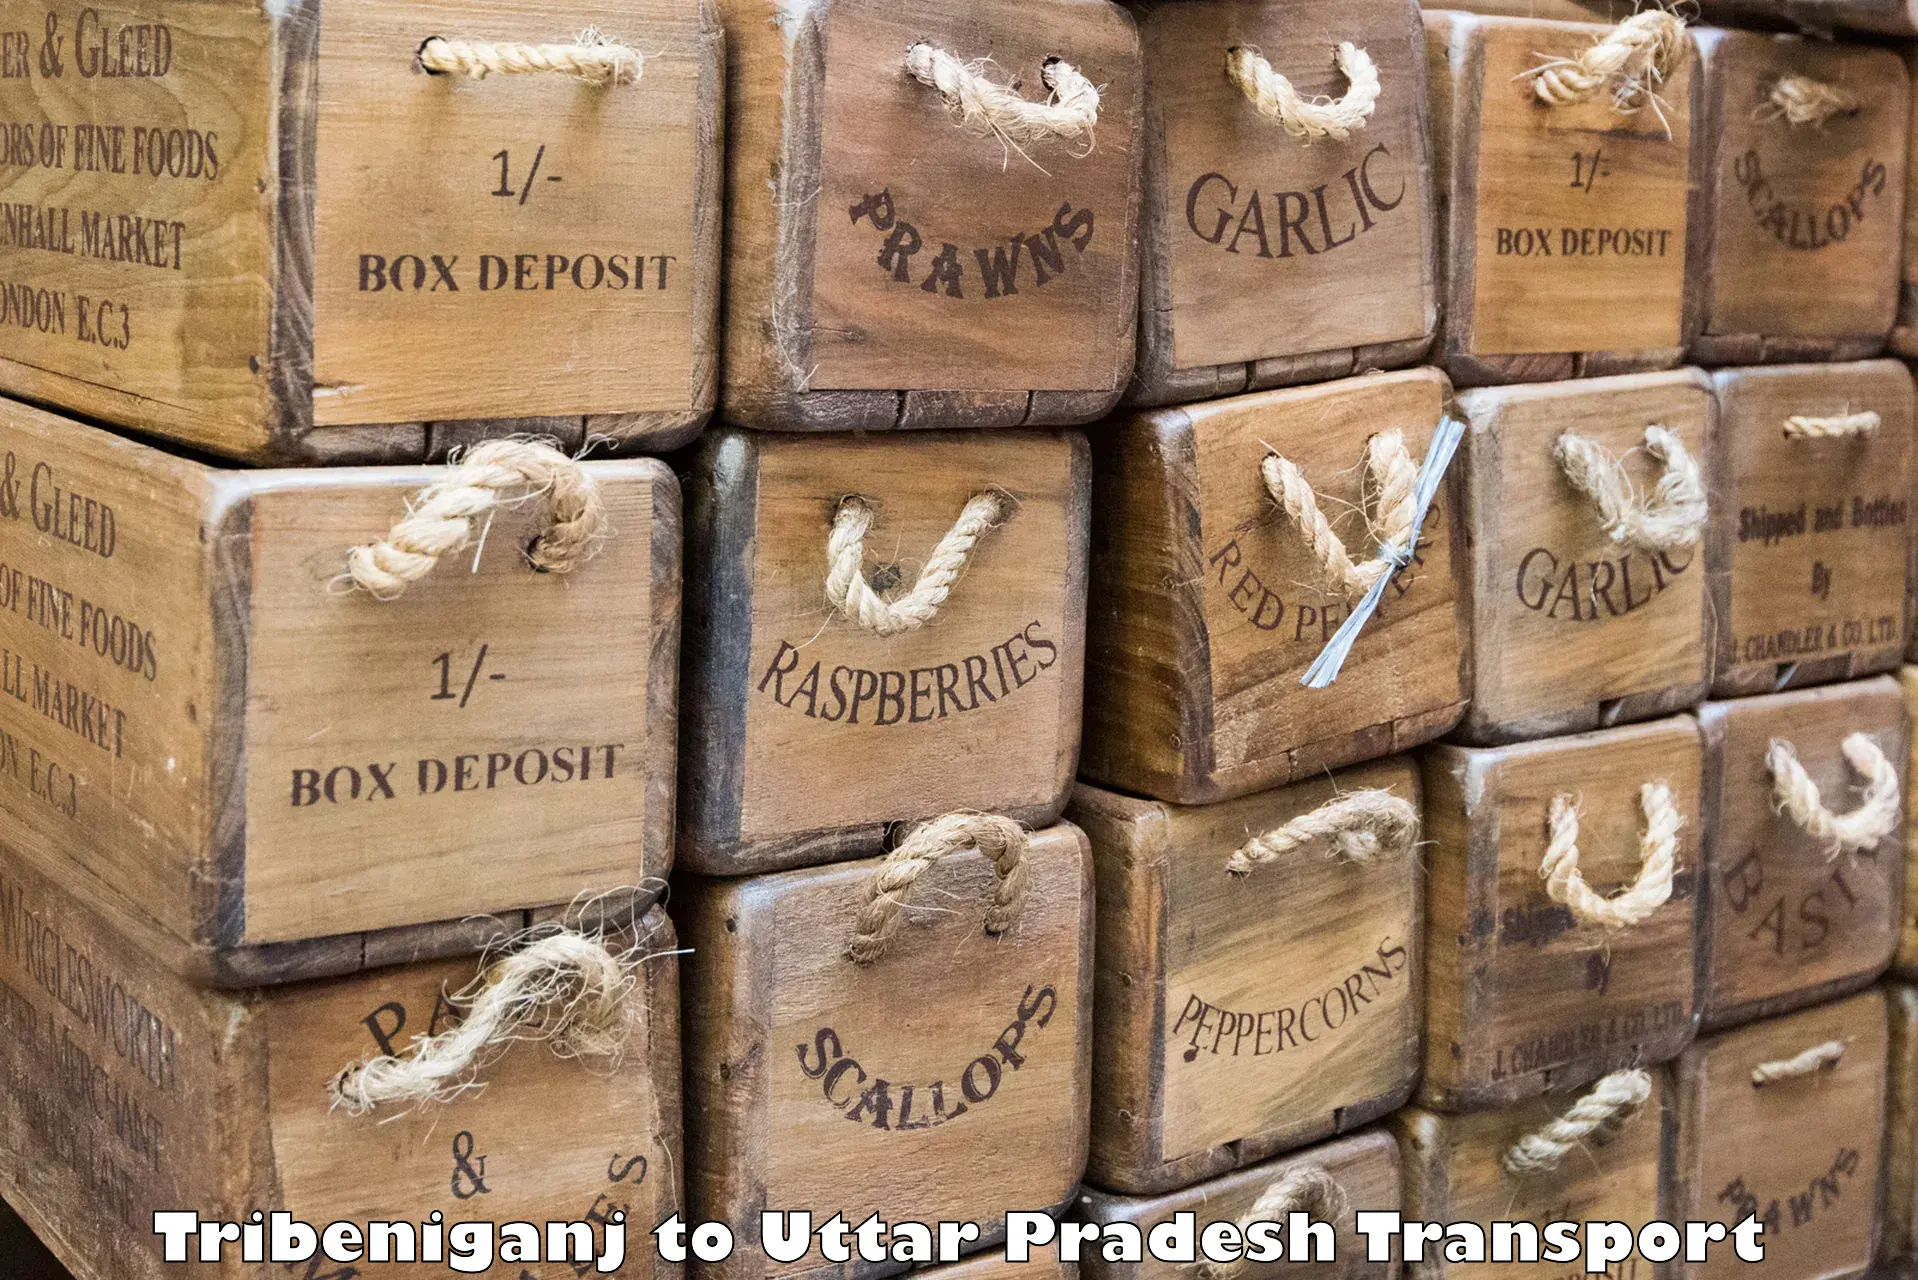 Daily parcel service transport in Tribeniganj to Dibai